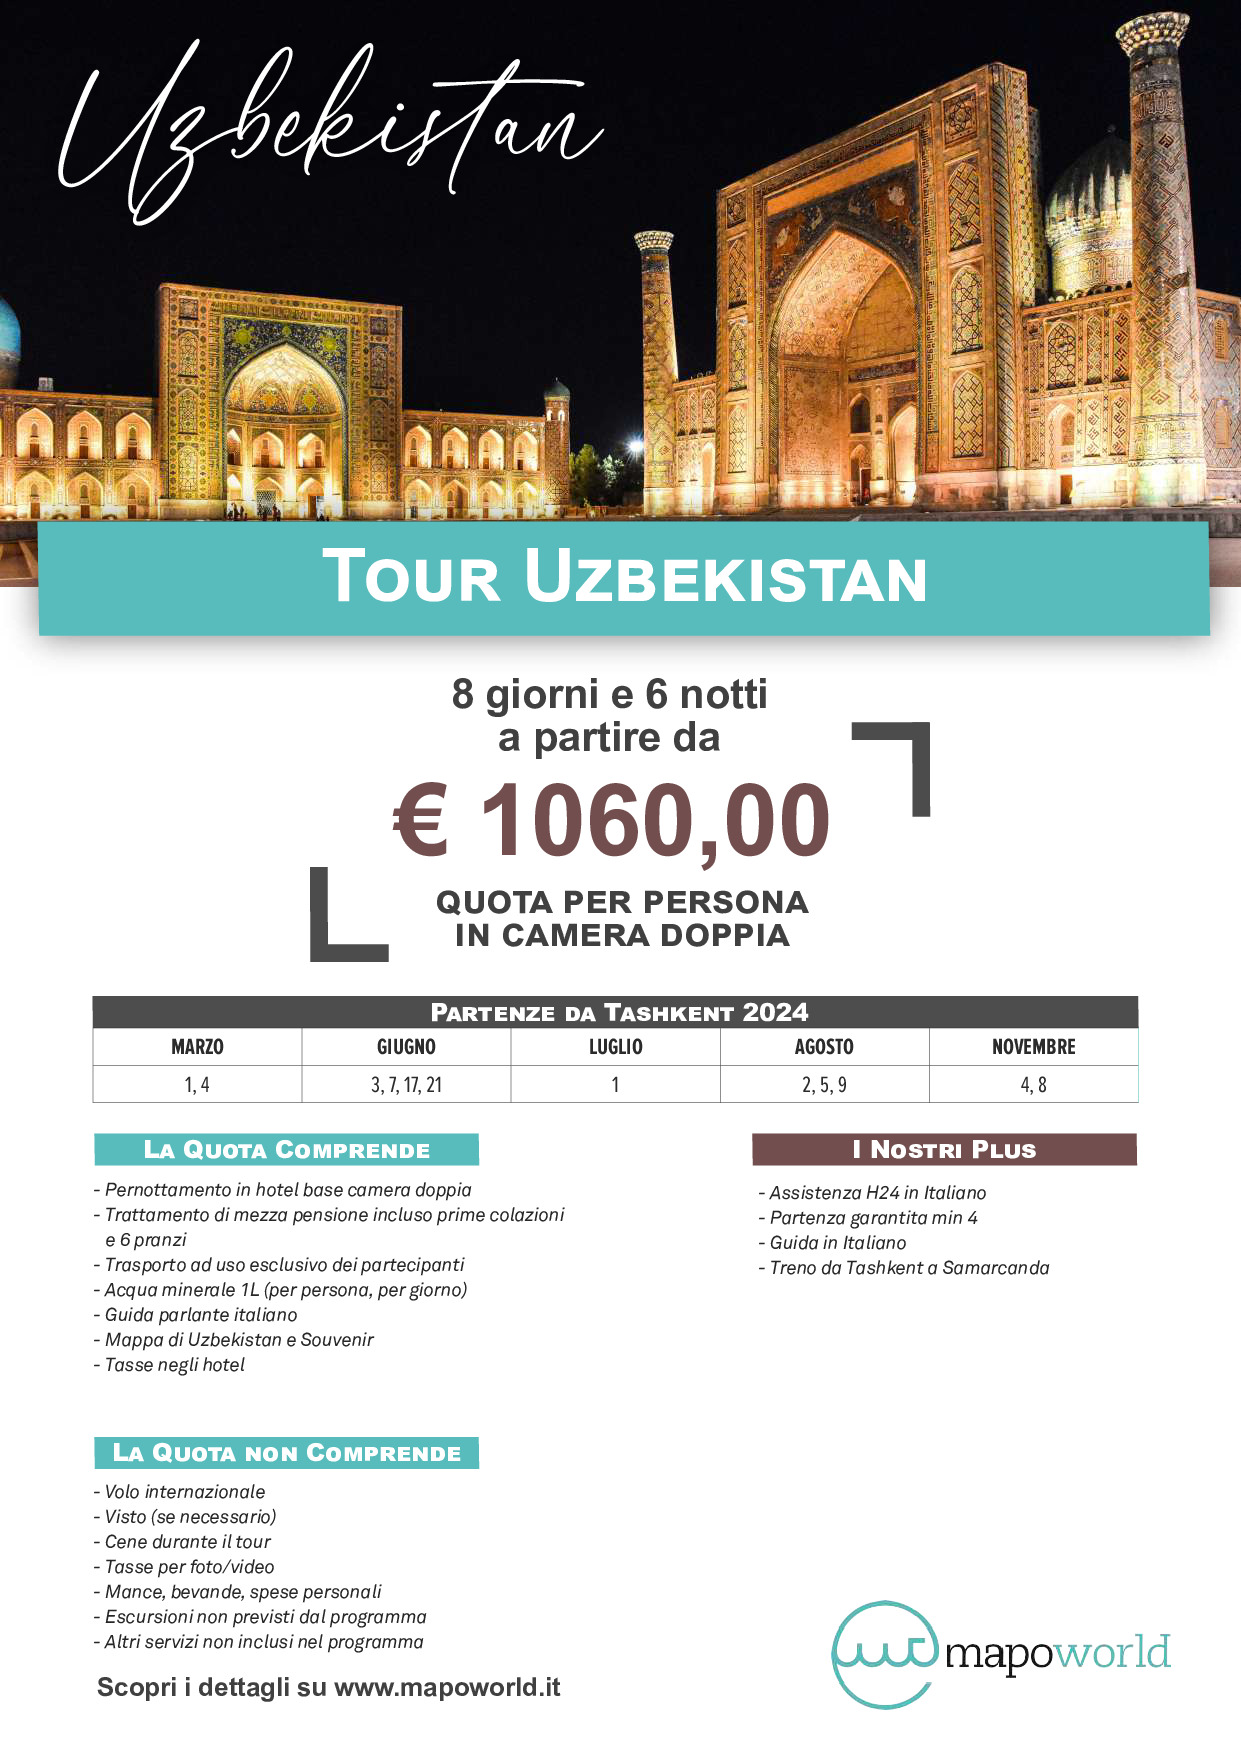 Tour in Uzbekistan